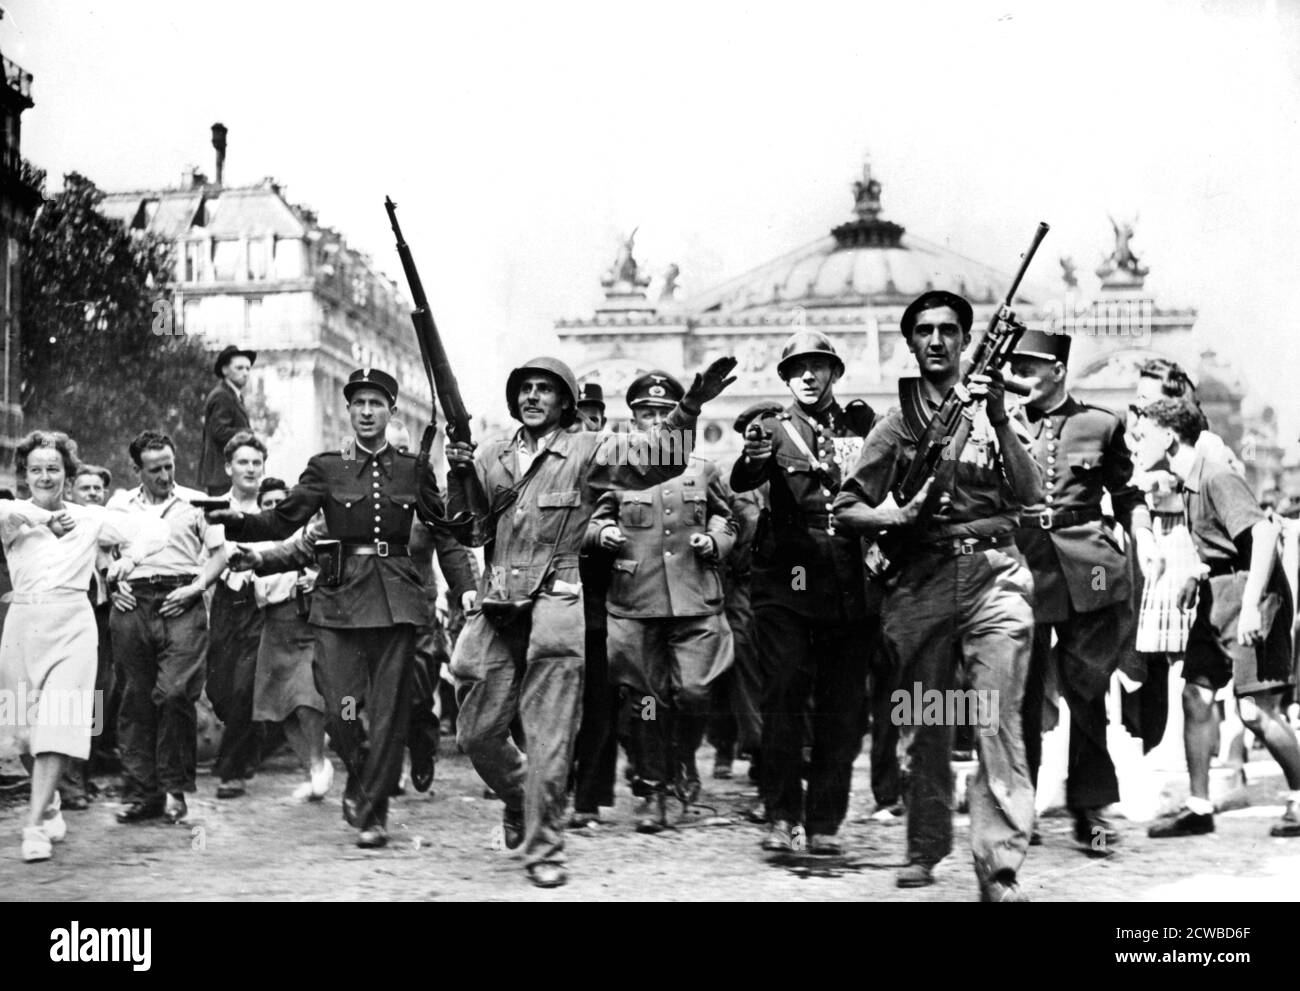 Befreiung von Paris, 25. August 1944. Gendarmen, Soldaten und Widerstandskämpfer, die deutsche Gefangene durch Massen jubelender Zivilisten vor der Oper begleiten. Der Fotograf ist unbekannt. Stockfoto